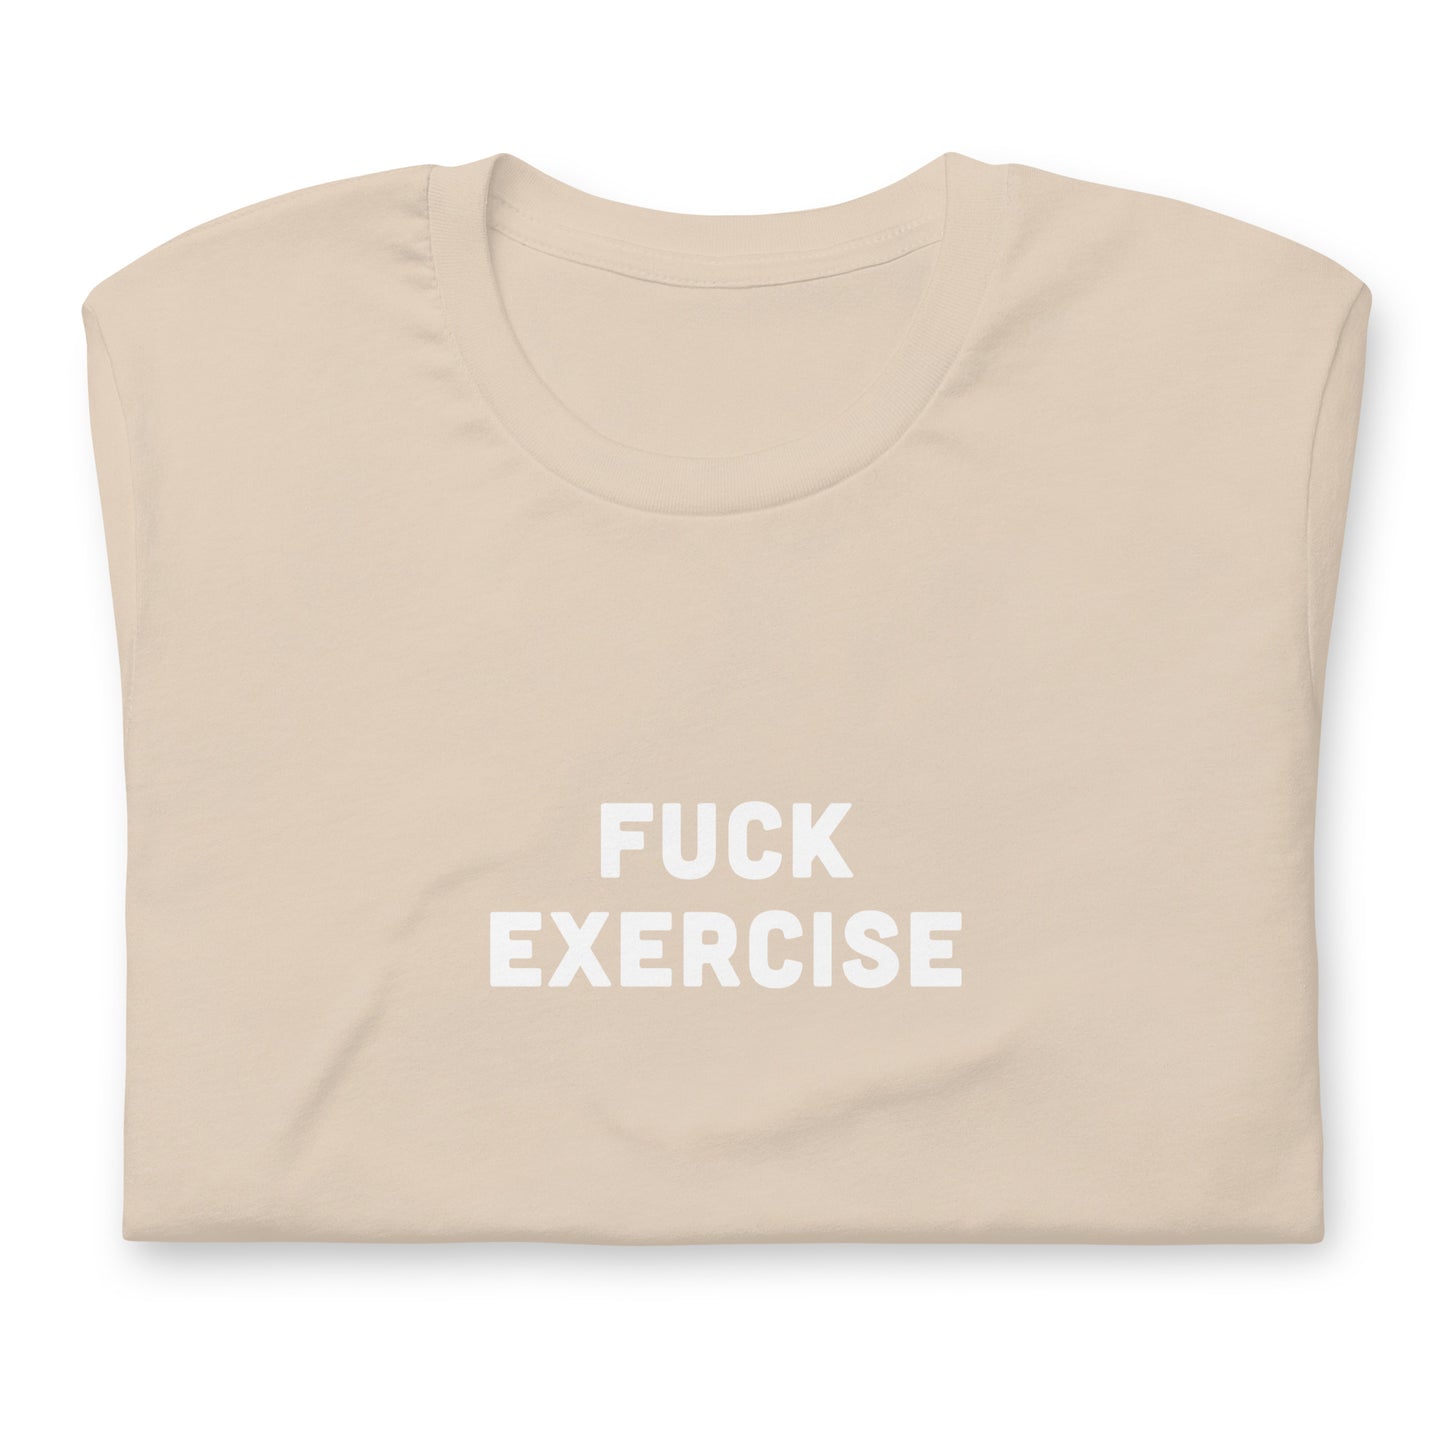 Fuck Exercise T-Shirt Size L Color Asphalt